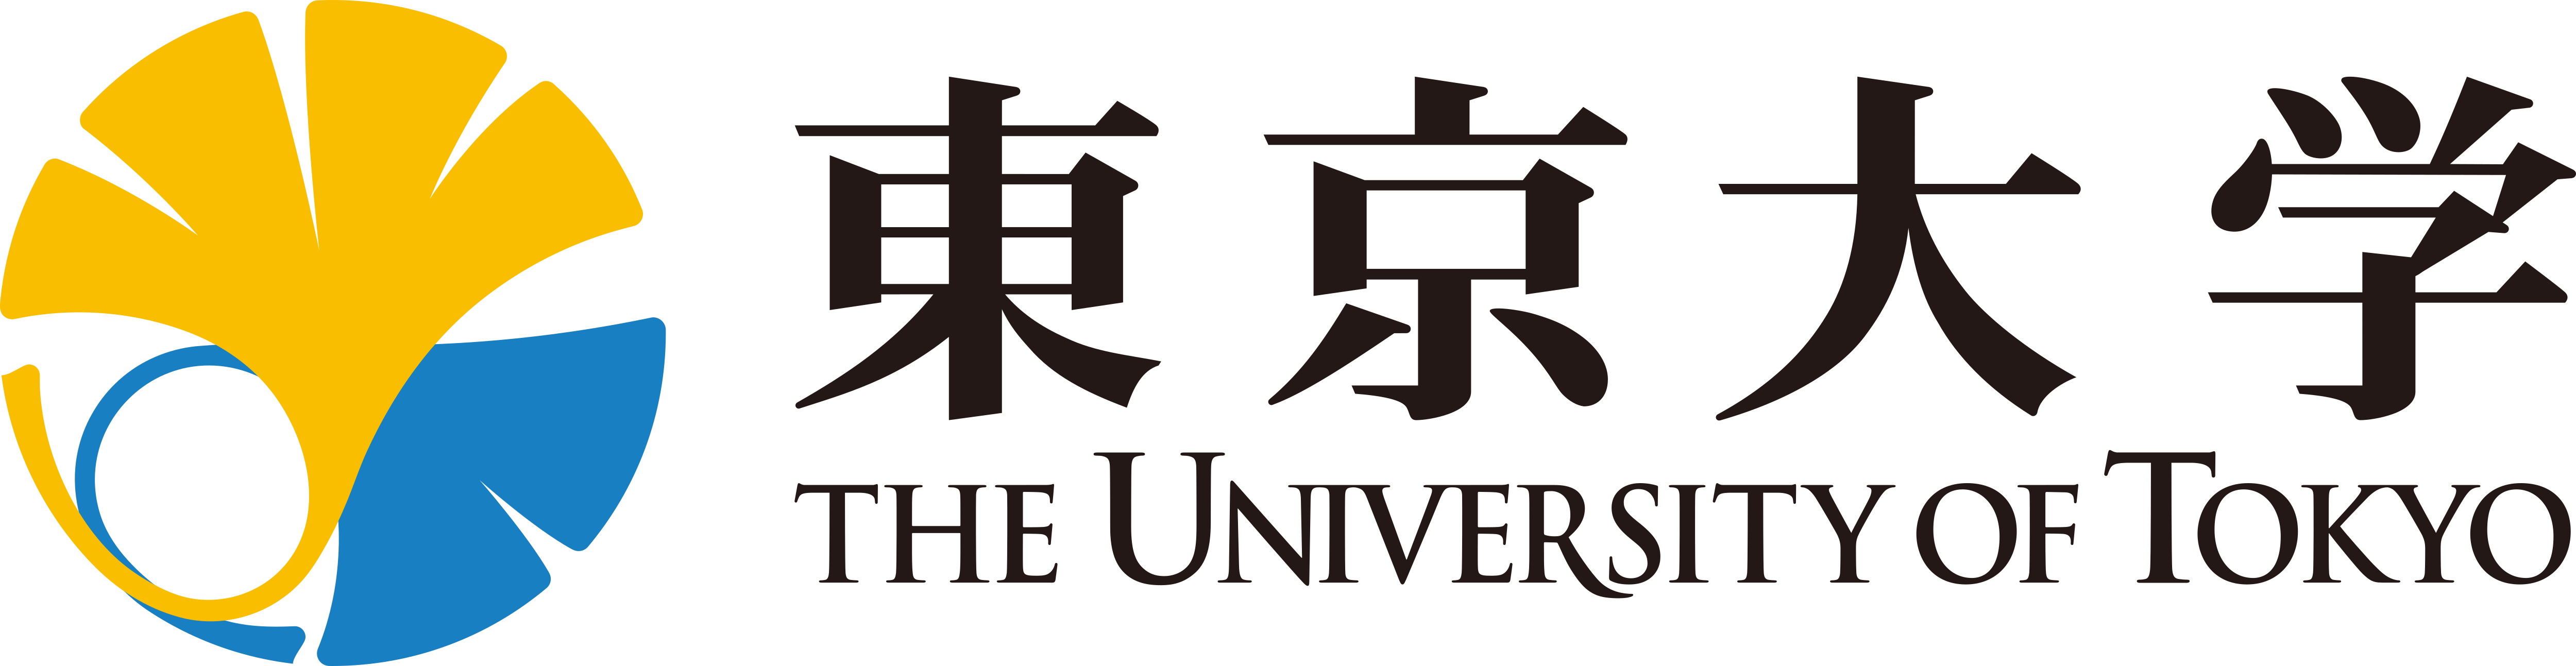 University of Tokyo – Ladda ner logotyper